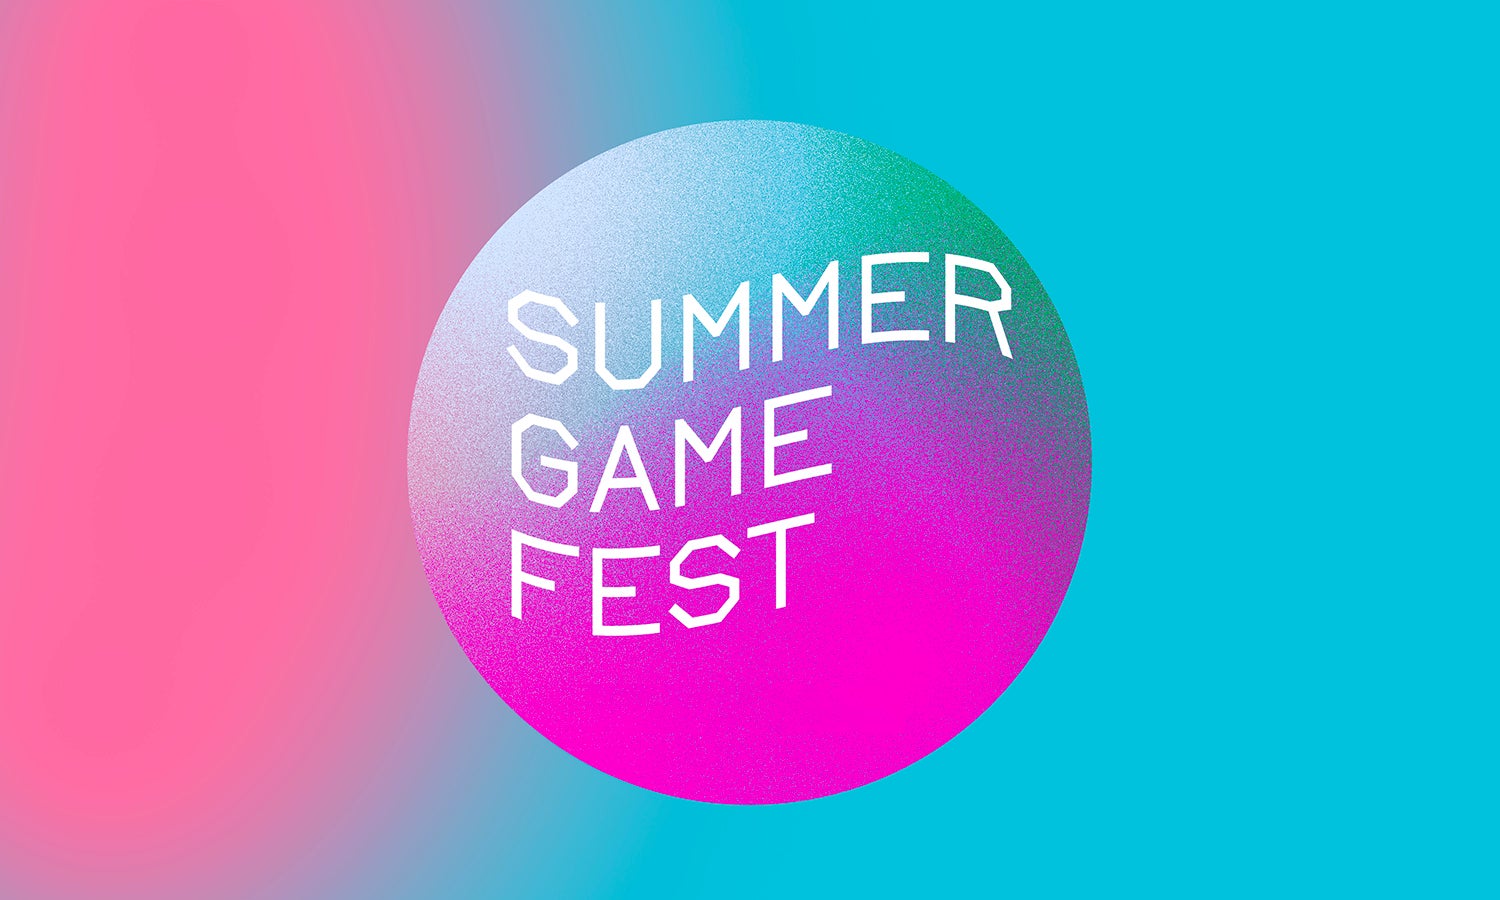 Le Summer Game Fest 2021 inclura le jour des développeurs